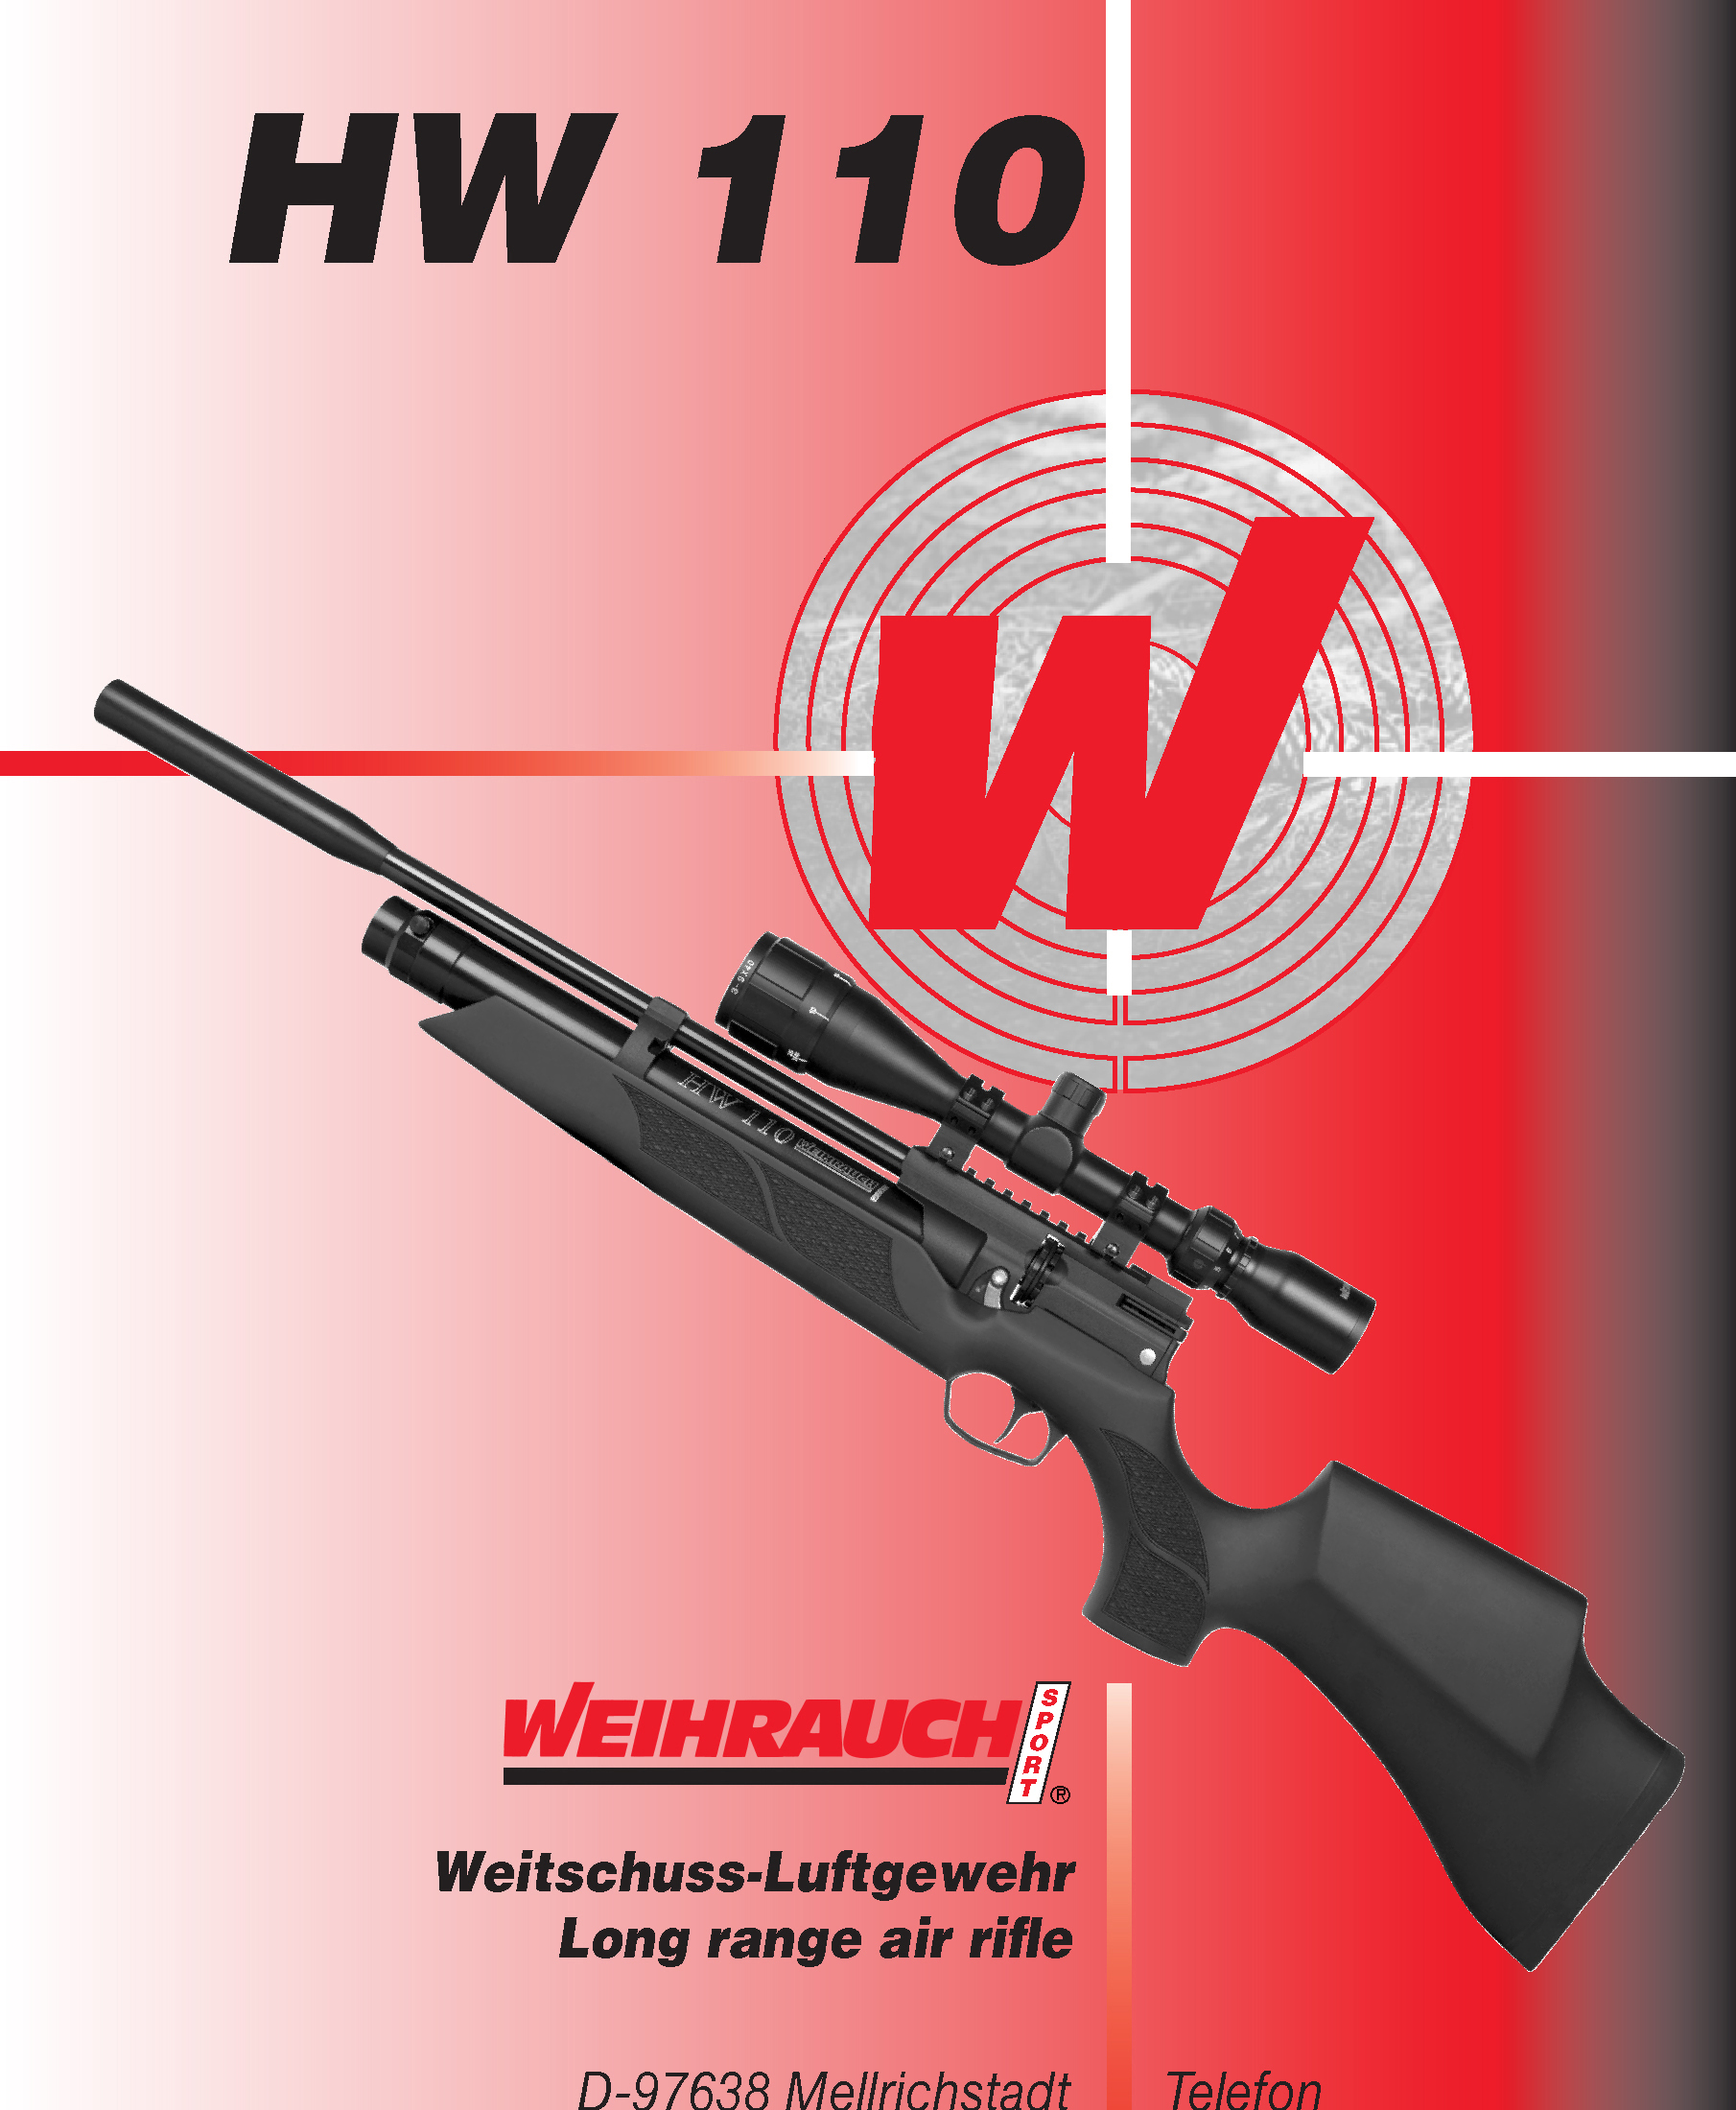 Manual WW Luftgewehr HW 110 03 2018 1